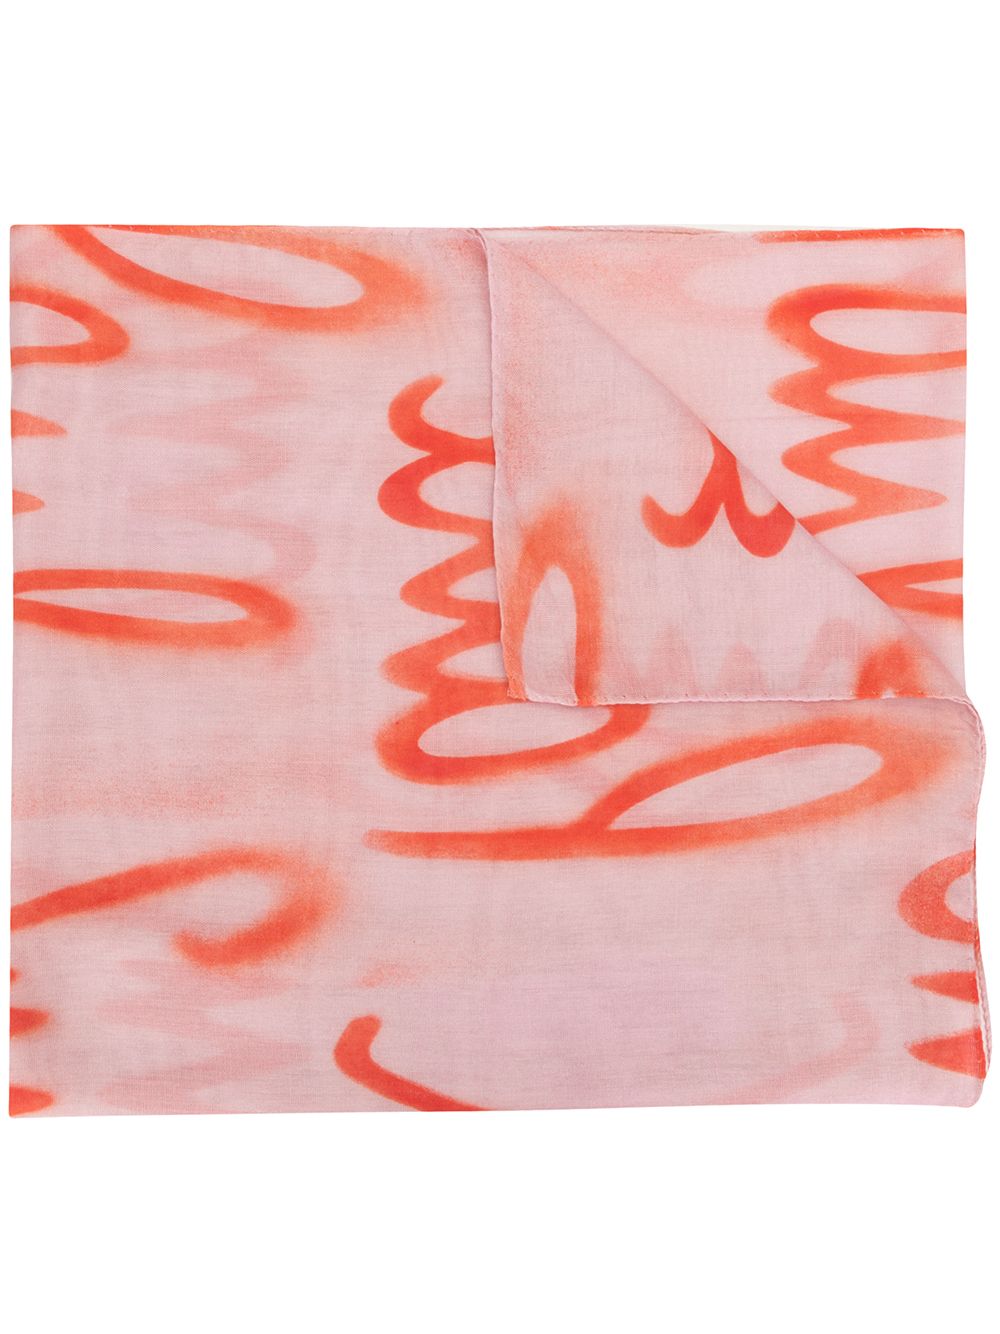 фото Paul smith платок с эффектом разбрызганной краски